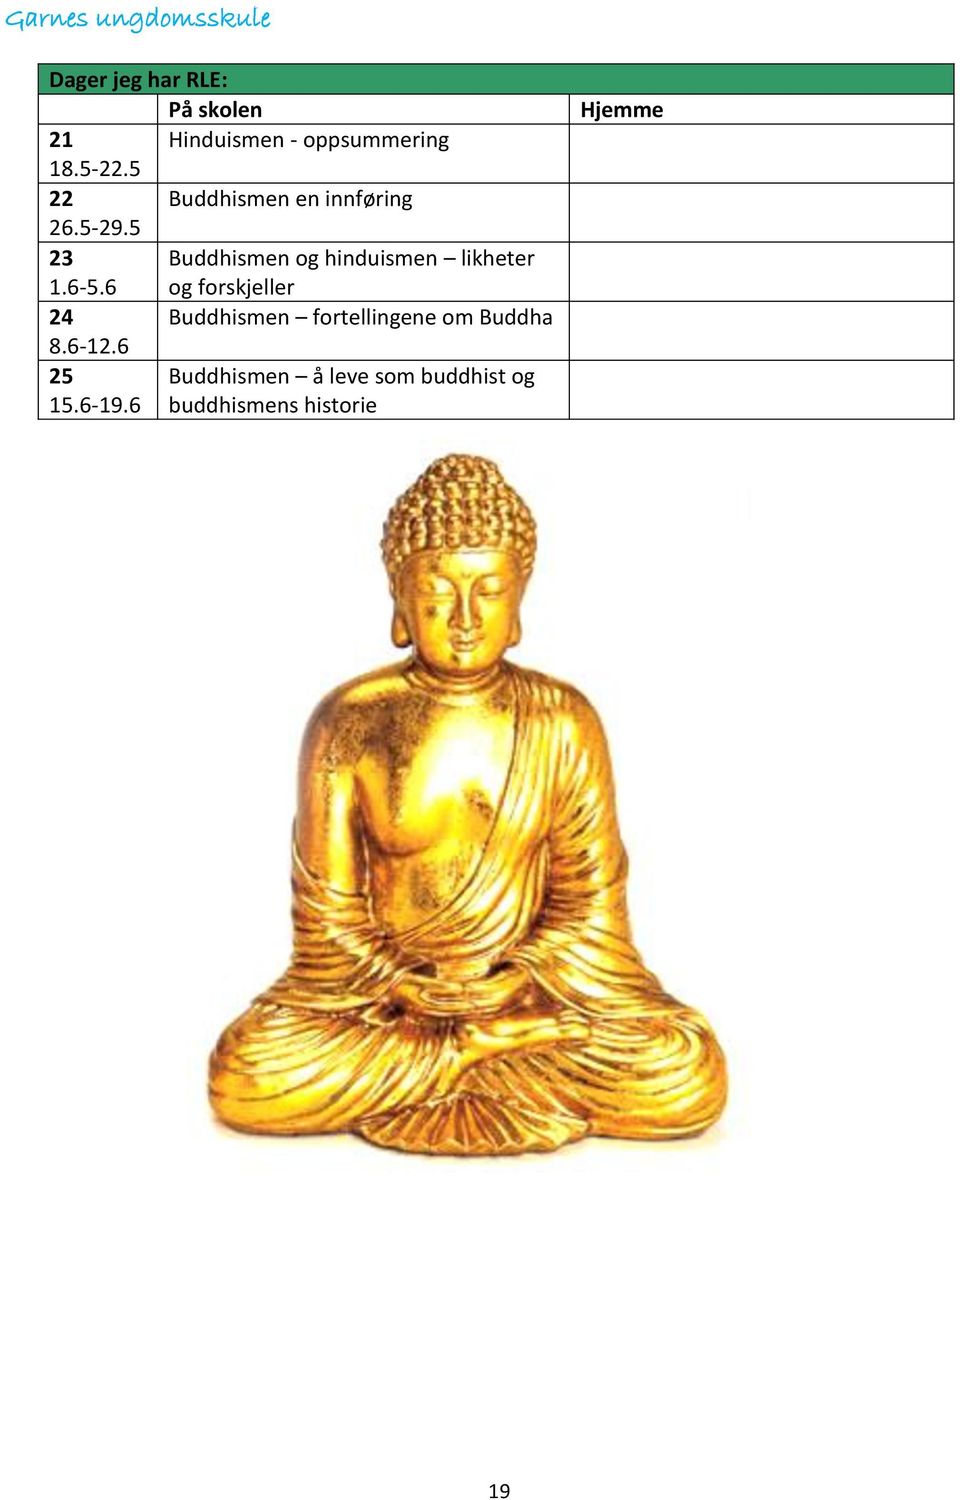 5 23 Buddhismen og hinduismen likheter 1.6-5.